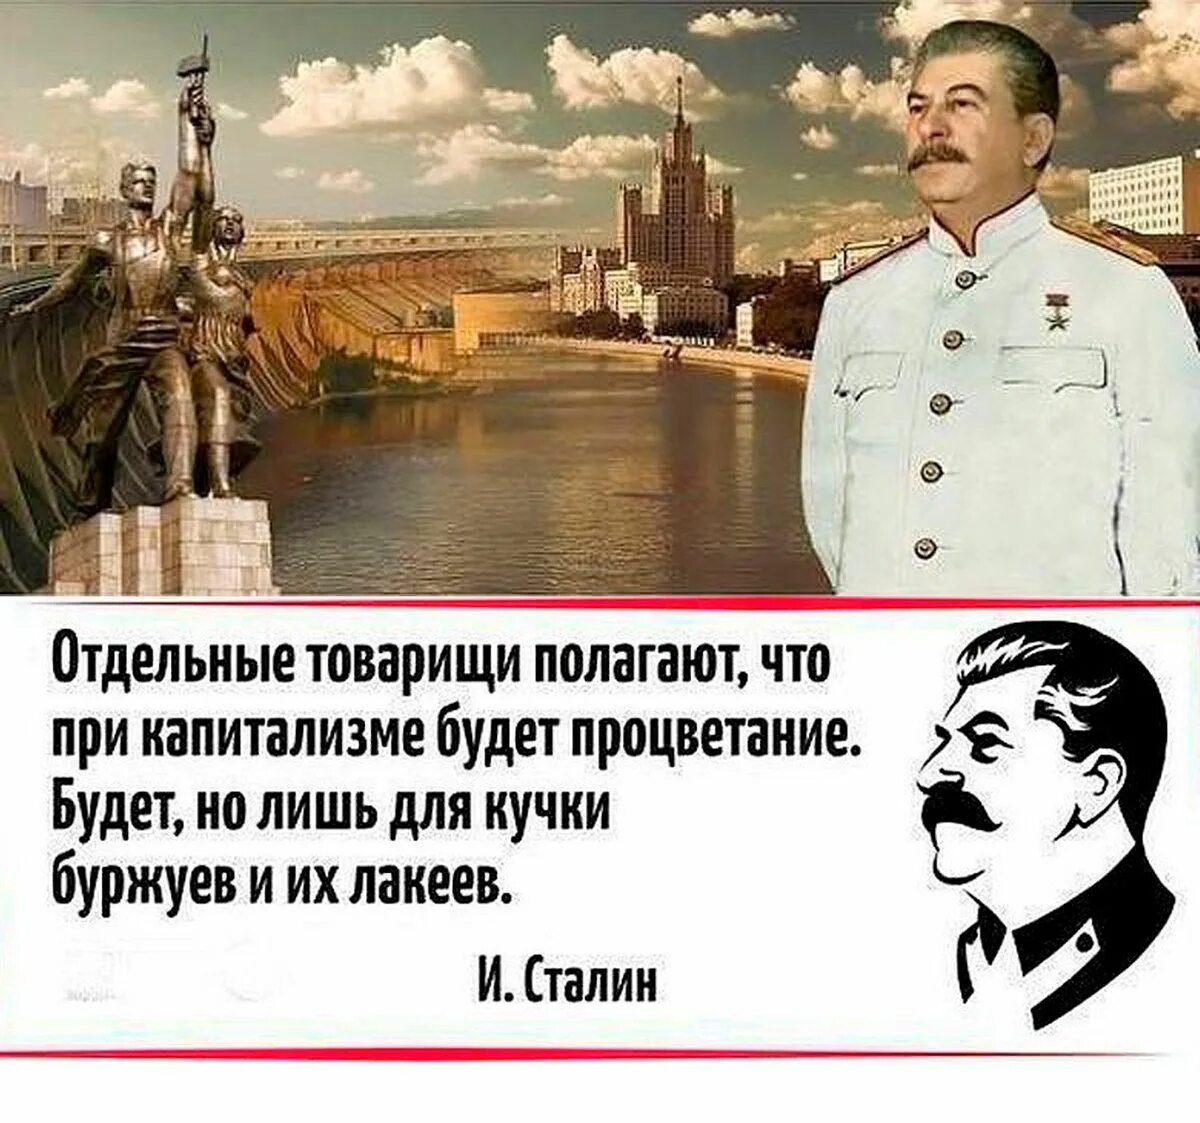 Отдельные товарищи полагают что при капитализме будет процветание. Цитаты Сталина. Сталин цитаты. Цитаты Сталина о капитализме.